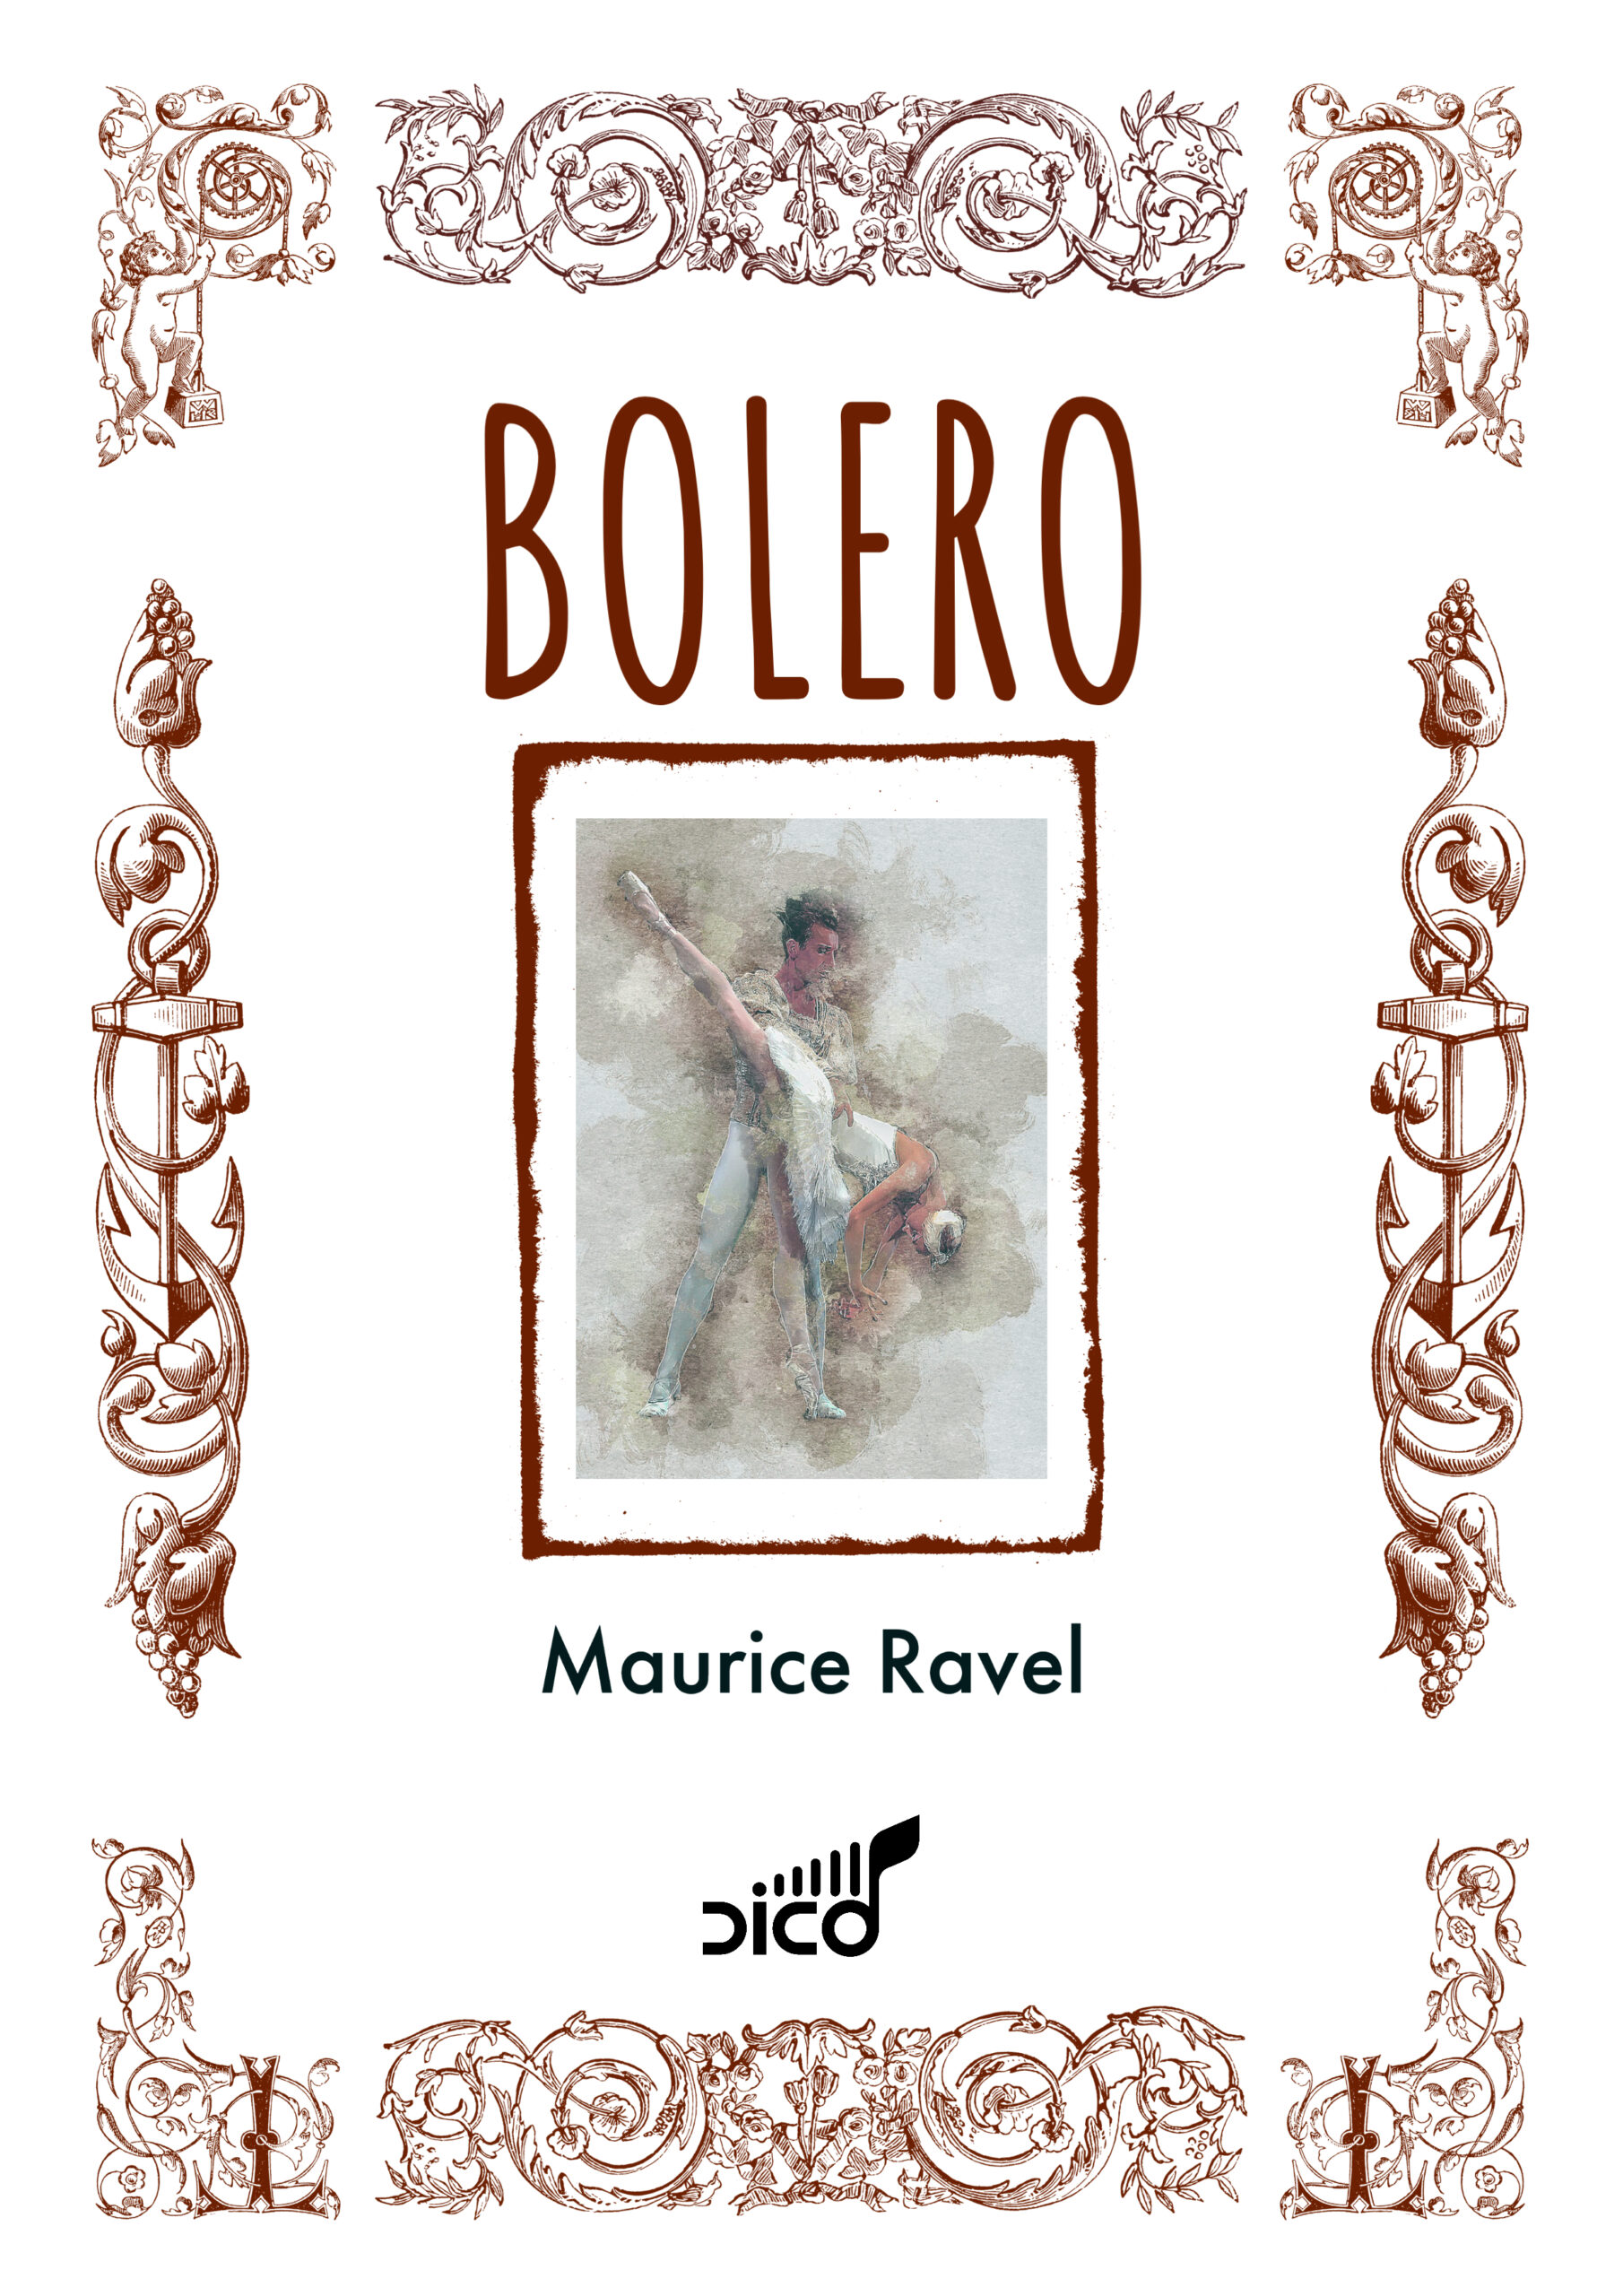 Bolero orch. web cover scaled